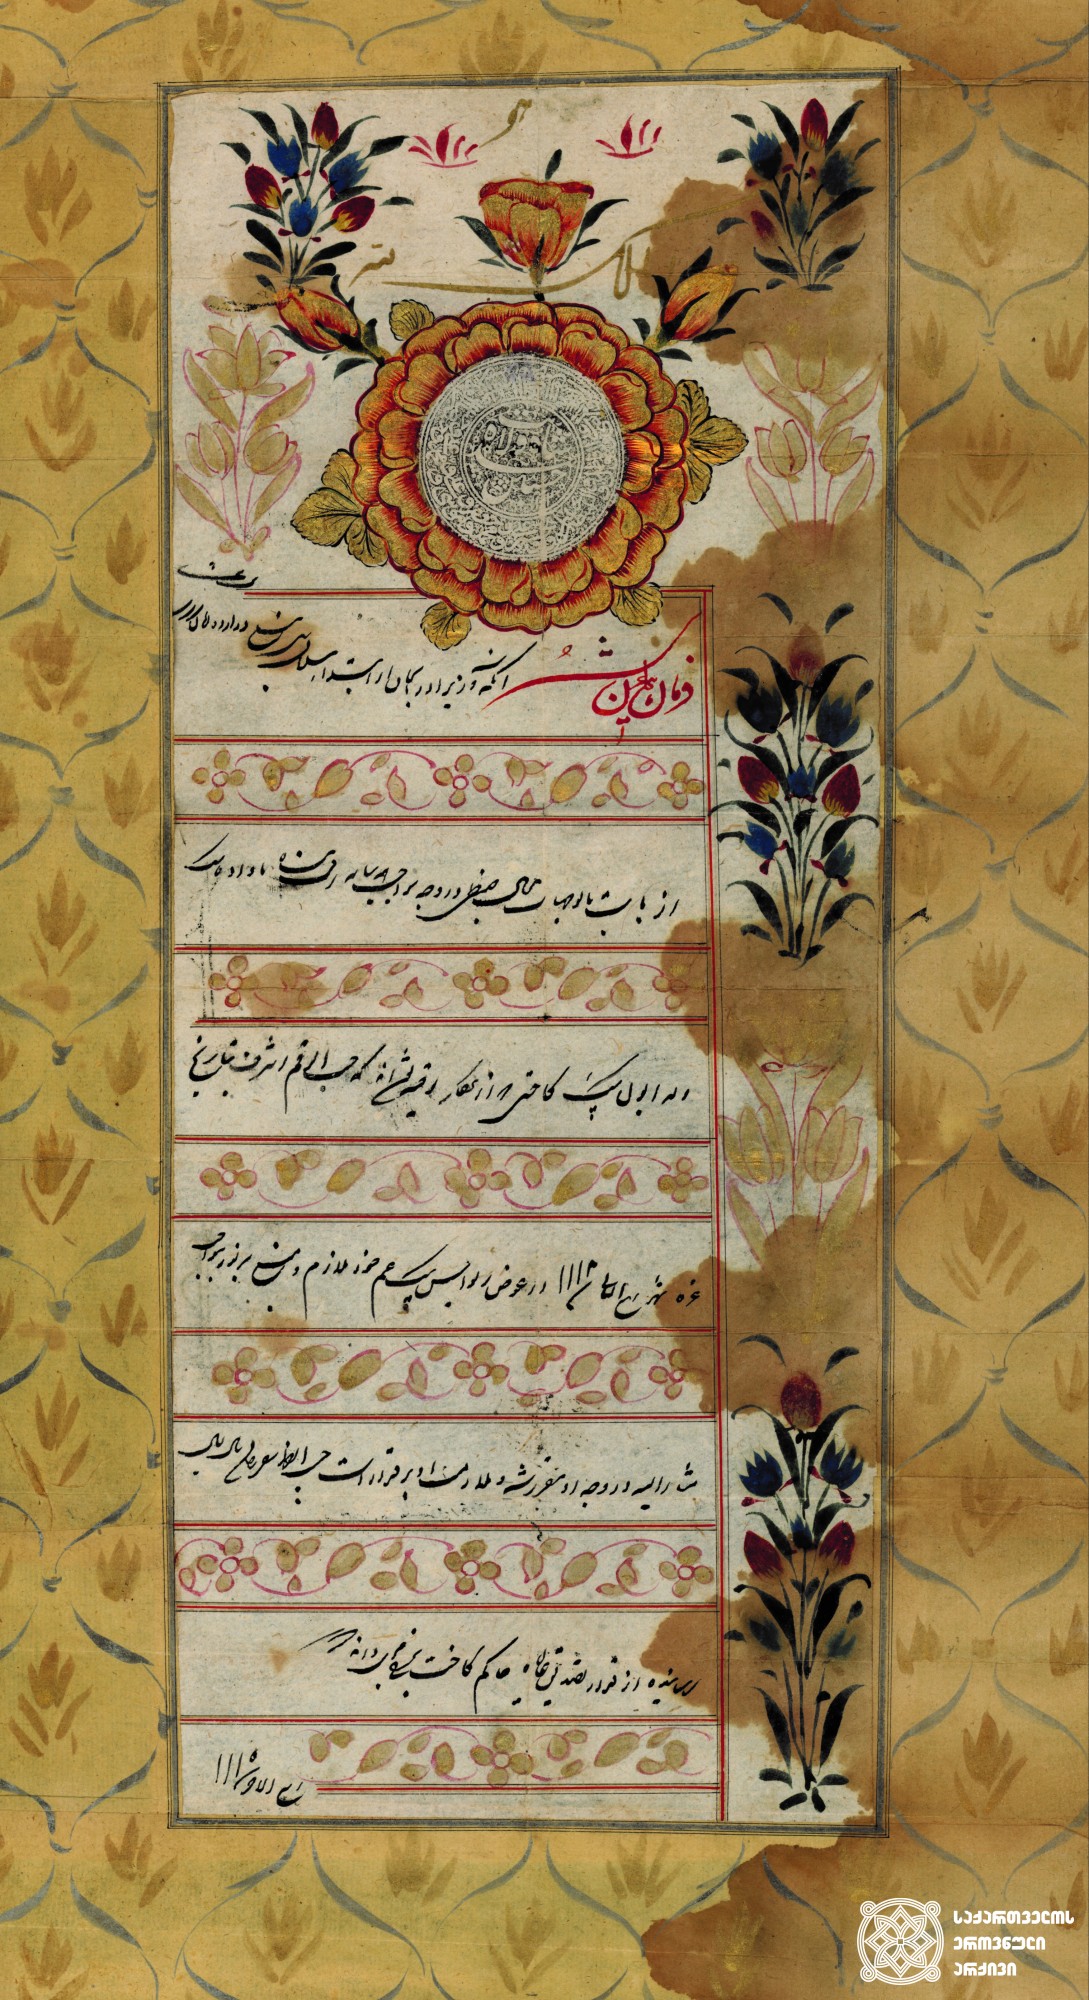 შაჰ-სულთან ჰუსეინის ფირმანი. 1703 წელი. <br>
შაჰ-სულთან ჰუსეინმა აბულ-ბეგ კახელის ვაჟს, პაატა-ბეგს ყოველწლიურ ჯამაგირად თორმეტი თავრიზული თუმანი დაუნიშნა. <br>
დაცულია საქართველლოს ეროვნულ არქივში. <br>
The decree of Shah-Sultan Hussein. Shah-sultan Hussein fixed the annual salary 120. <br> 1703. Tavriz rubles to Paata-Beg, the son of Kakhetian Abul-Beg. <br>
Preserved at the National Archives of Georgia.